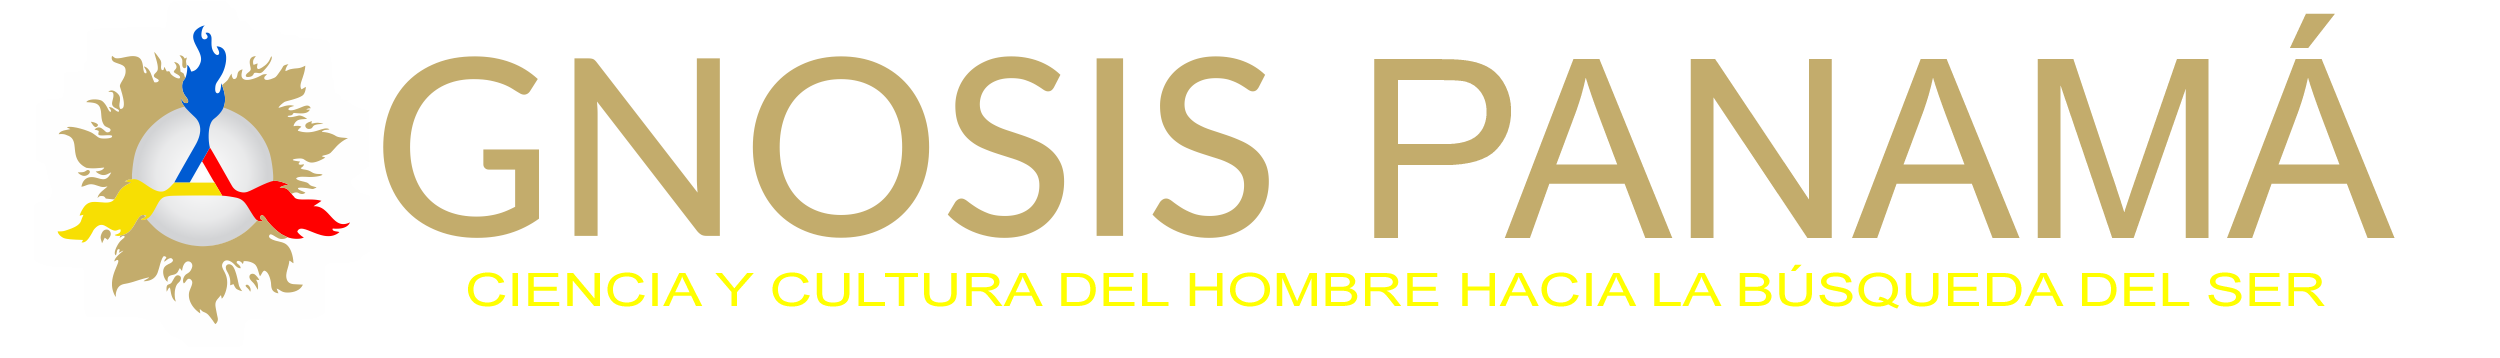 Gnosis Panamá (sitio oficial) logo